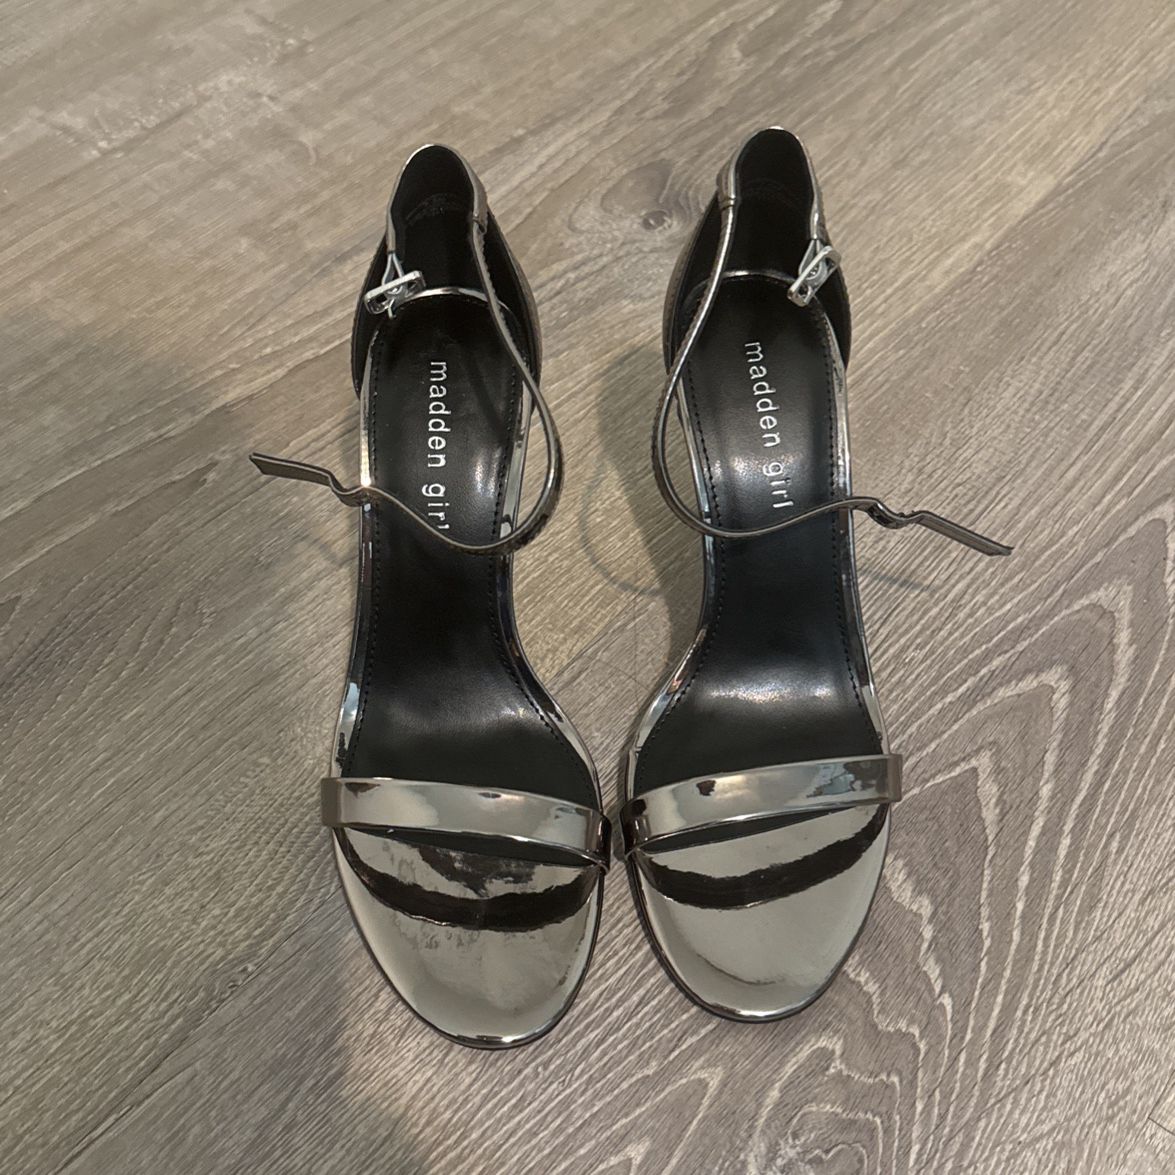 Madden Girl Heels, Dark Silver Mirror Metallic, Size 7.5